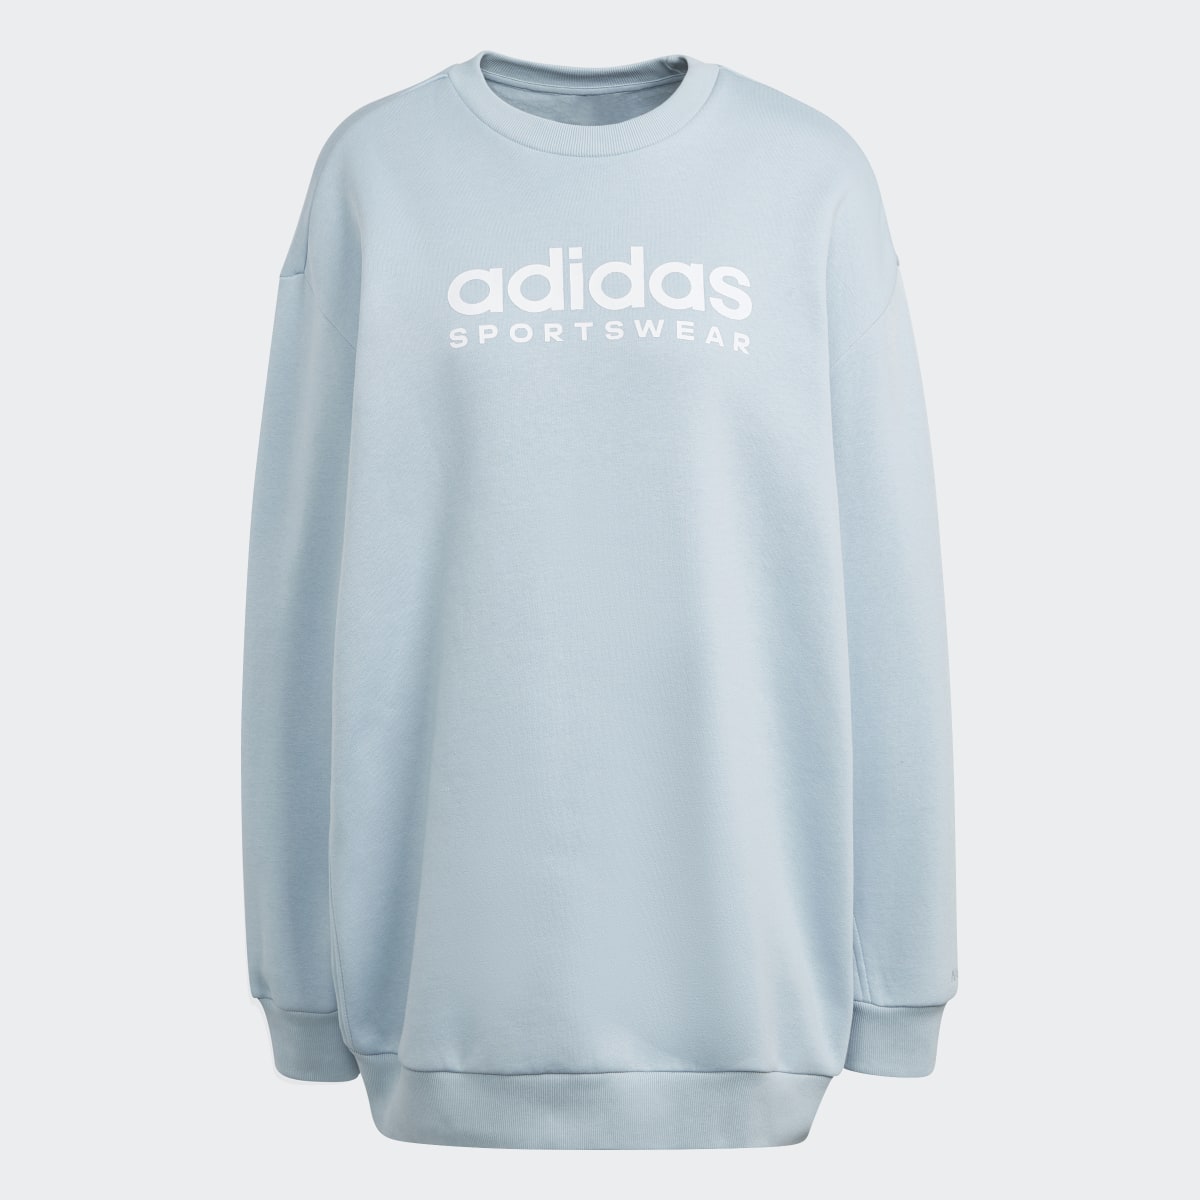 Adidas ALL SZN Fleece Graphic Sweatshirt. 4